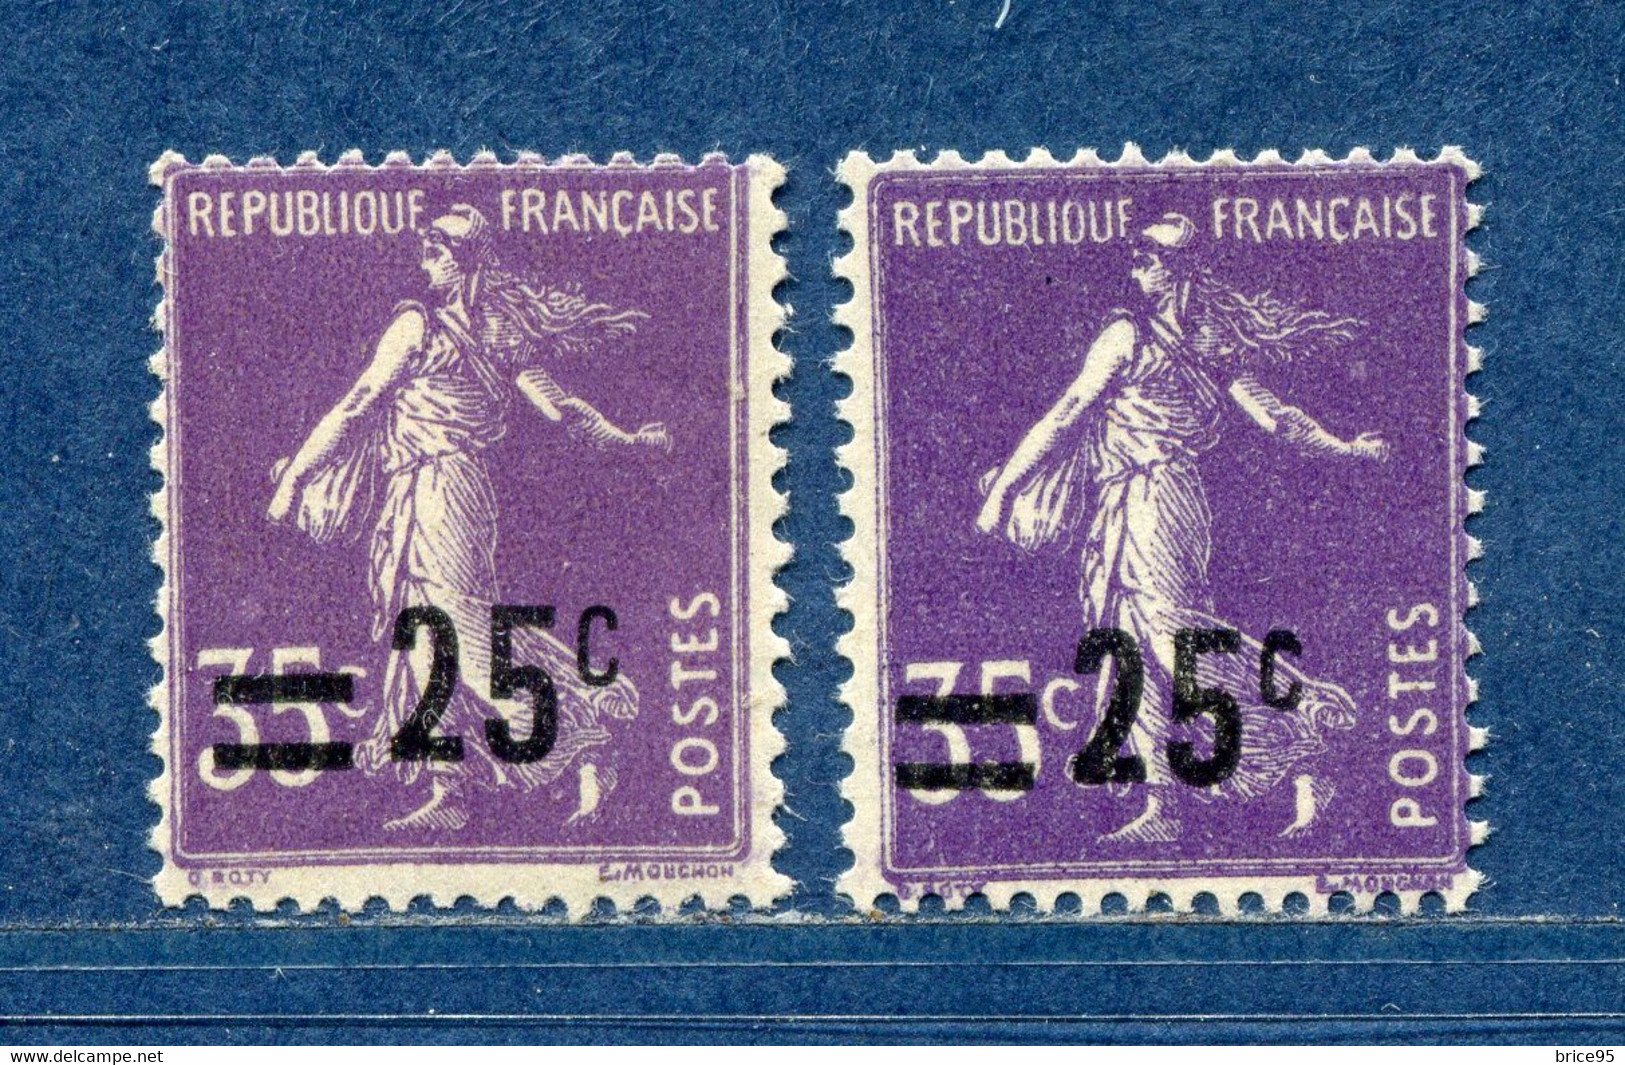 ⭐ France - Variété - YT N° 218 - Couleurs - Pétouilles - Neuf Sans Charnière - 1926 ⭐ - Unused Stamps